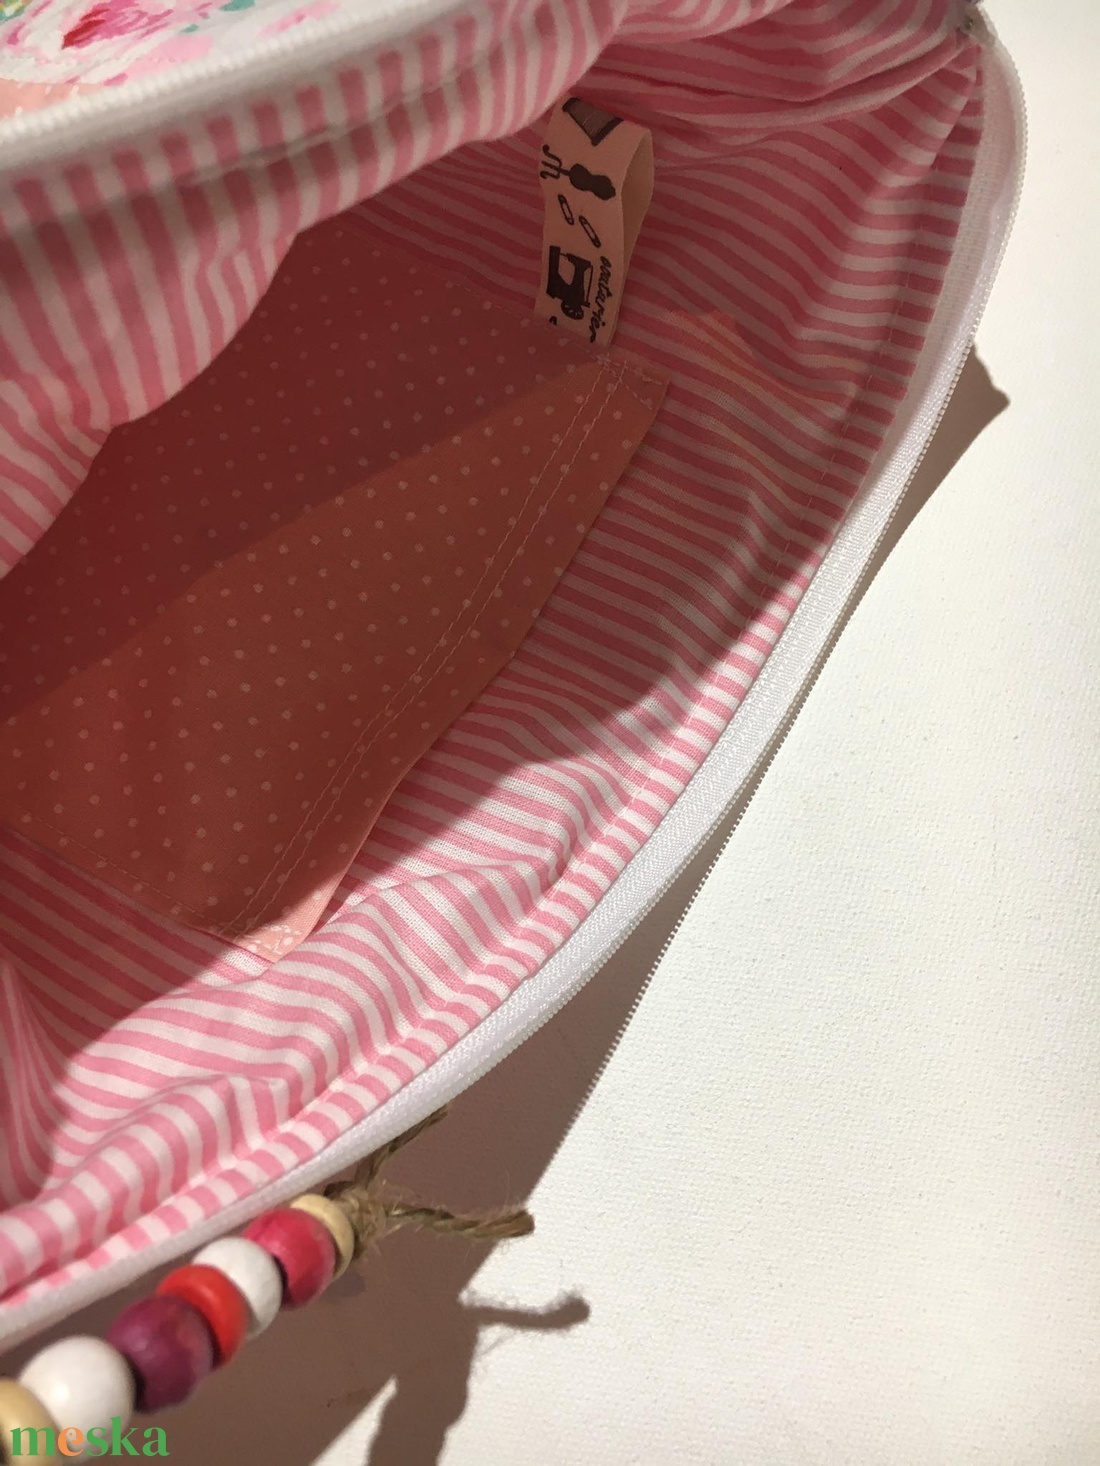  SHABBY COTTAGE / ROSE. Patchwork XL neszi pasztell színekben.  - táska & tok - neszesszer - Meska.hu